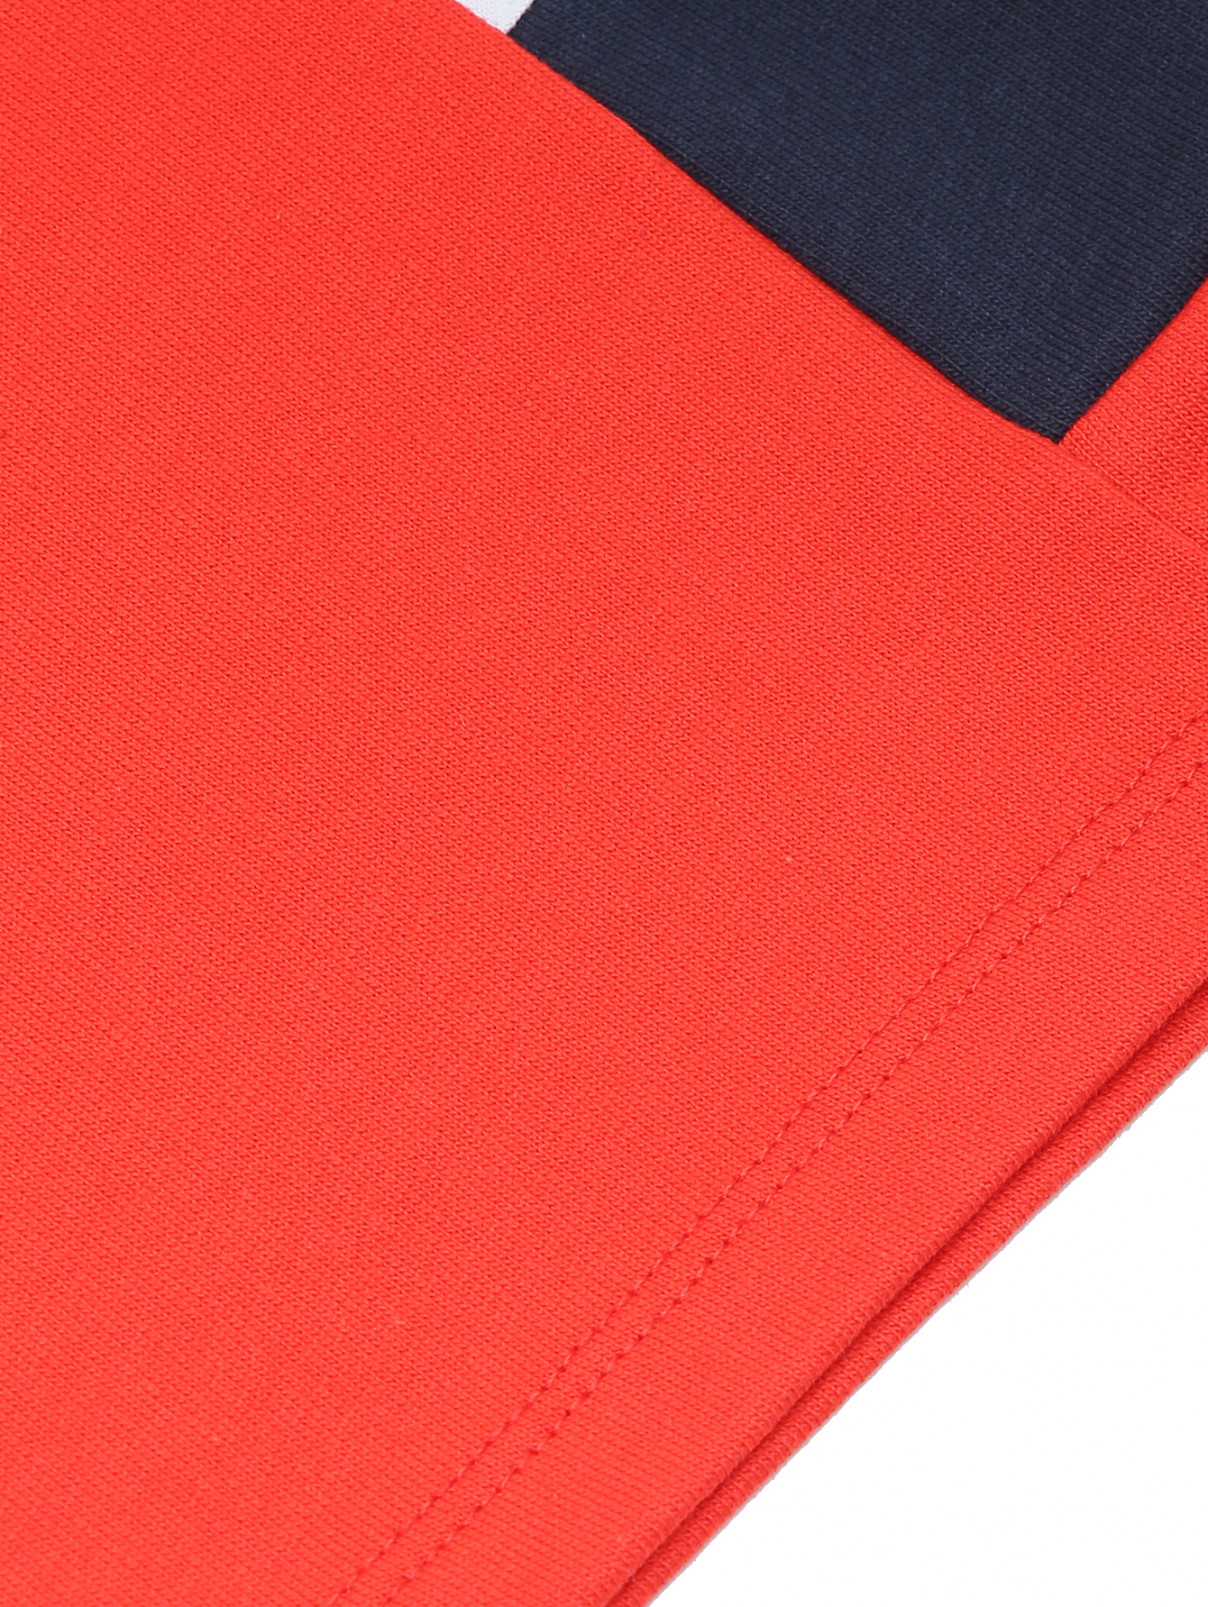 Шорты на резинке с карманами Bikkembergs  –  Деталь  – Цвет:  Красный